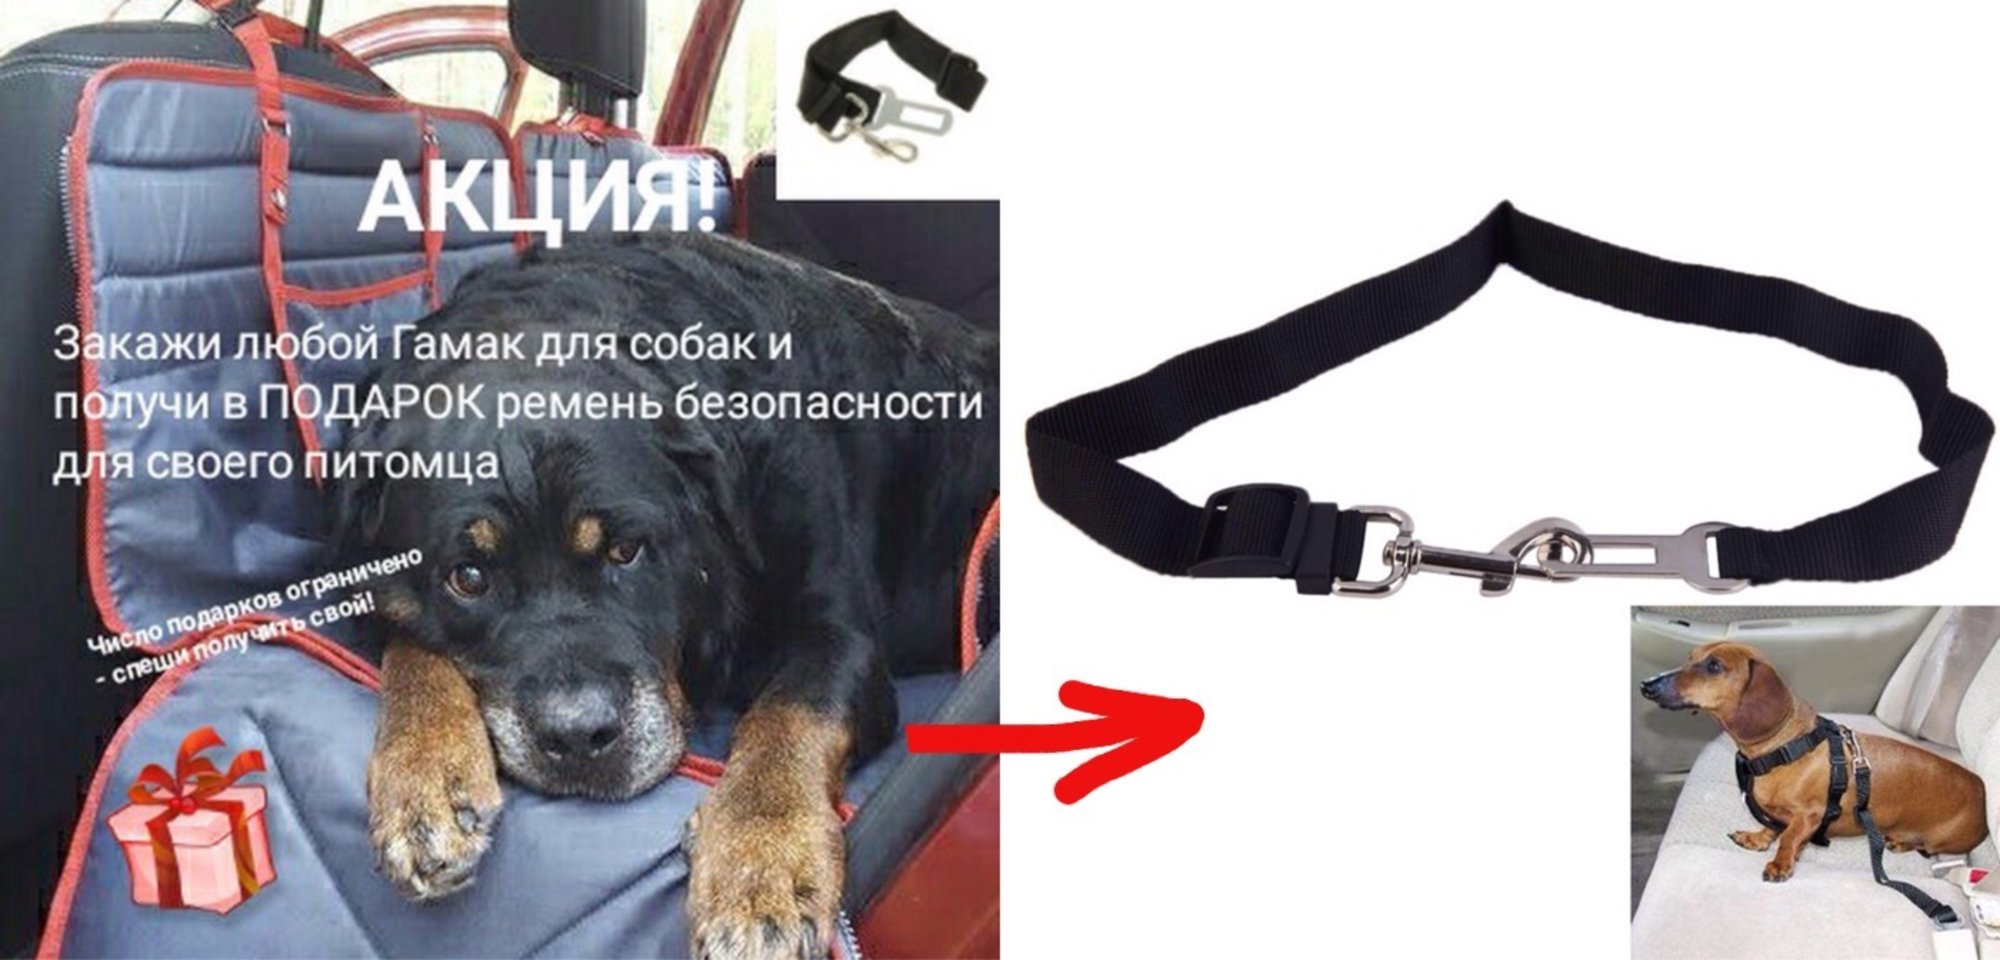 Акция на сайте Trends4Car ru  Ремень безопасности для собак в подарок